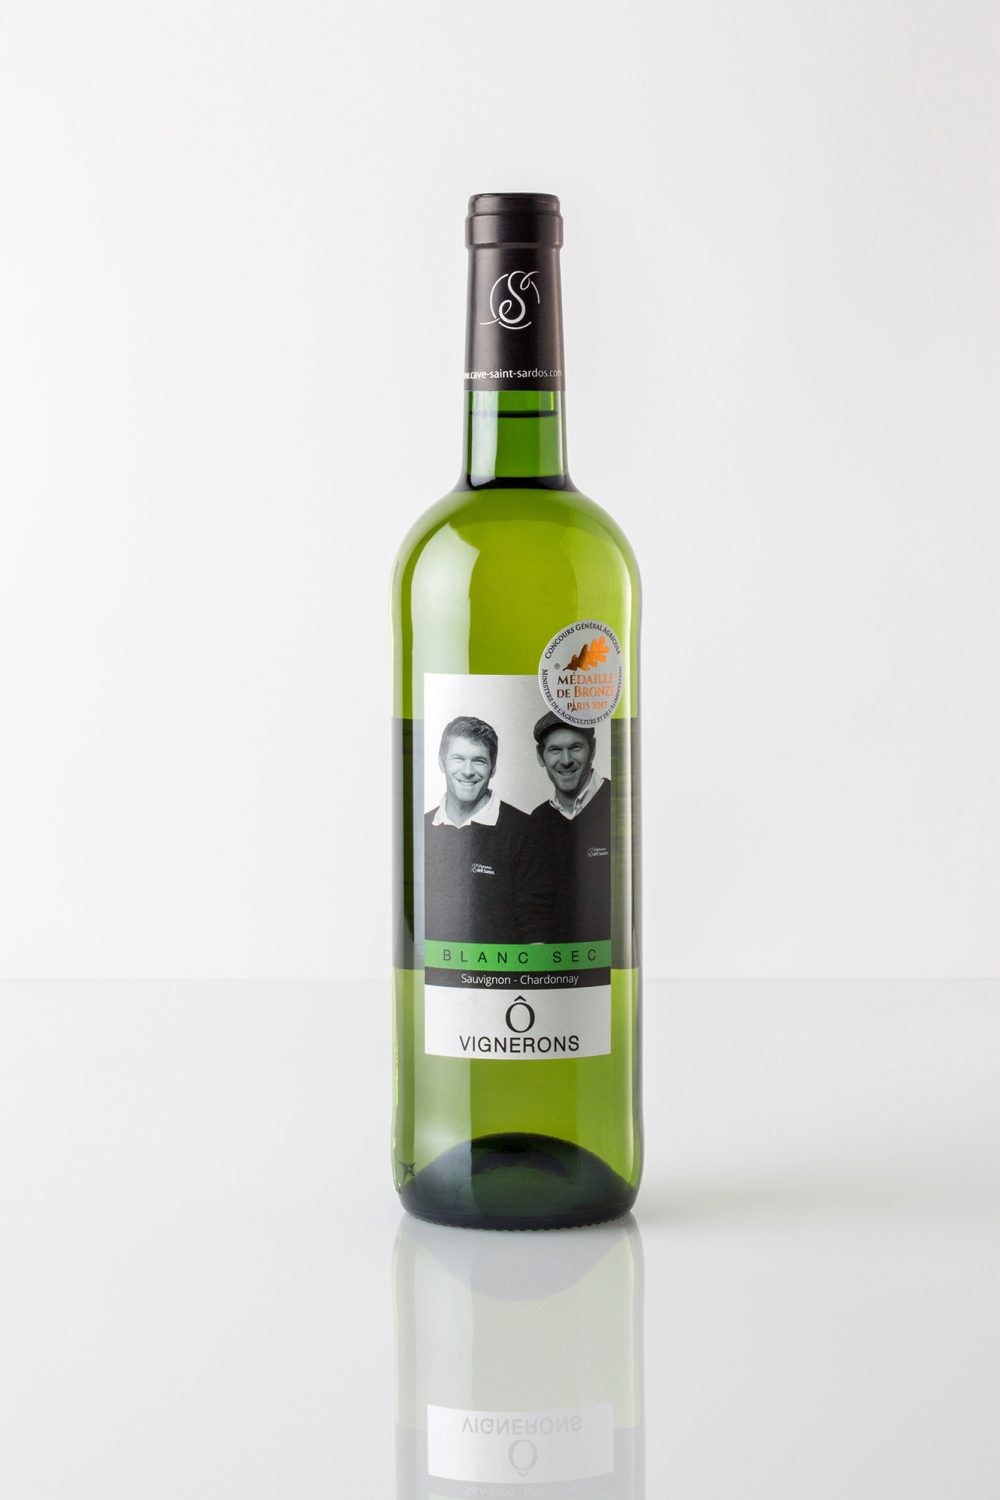 Bouteille de vin blanc sur fond blanc avec une étiquette montrant les vignerons